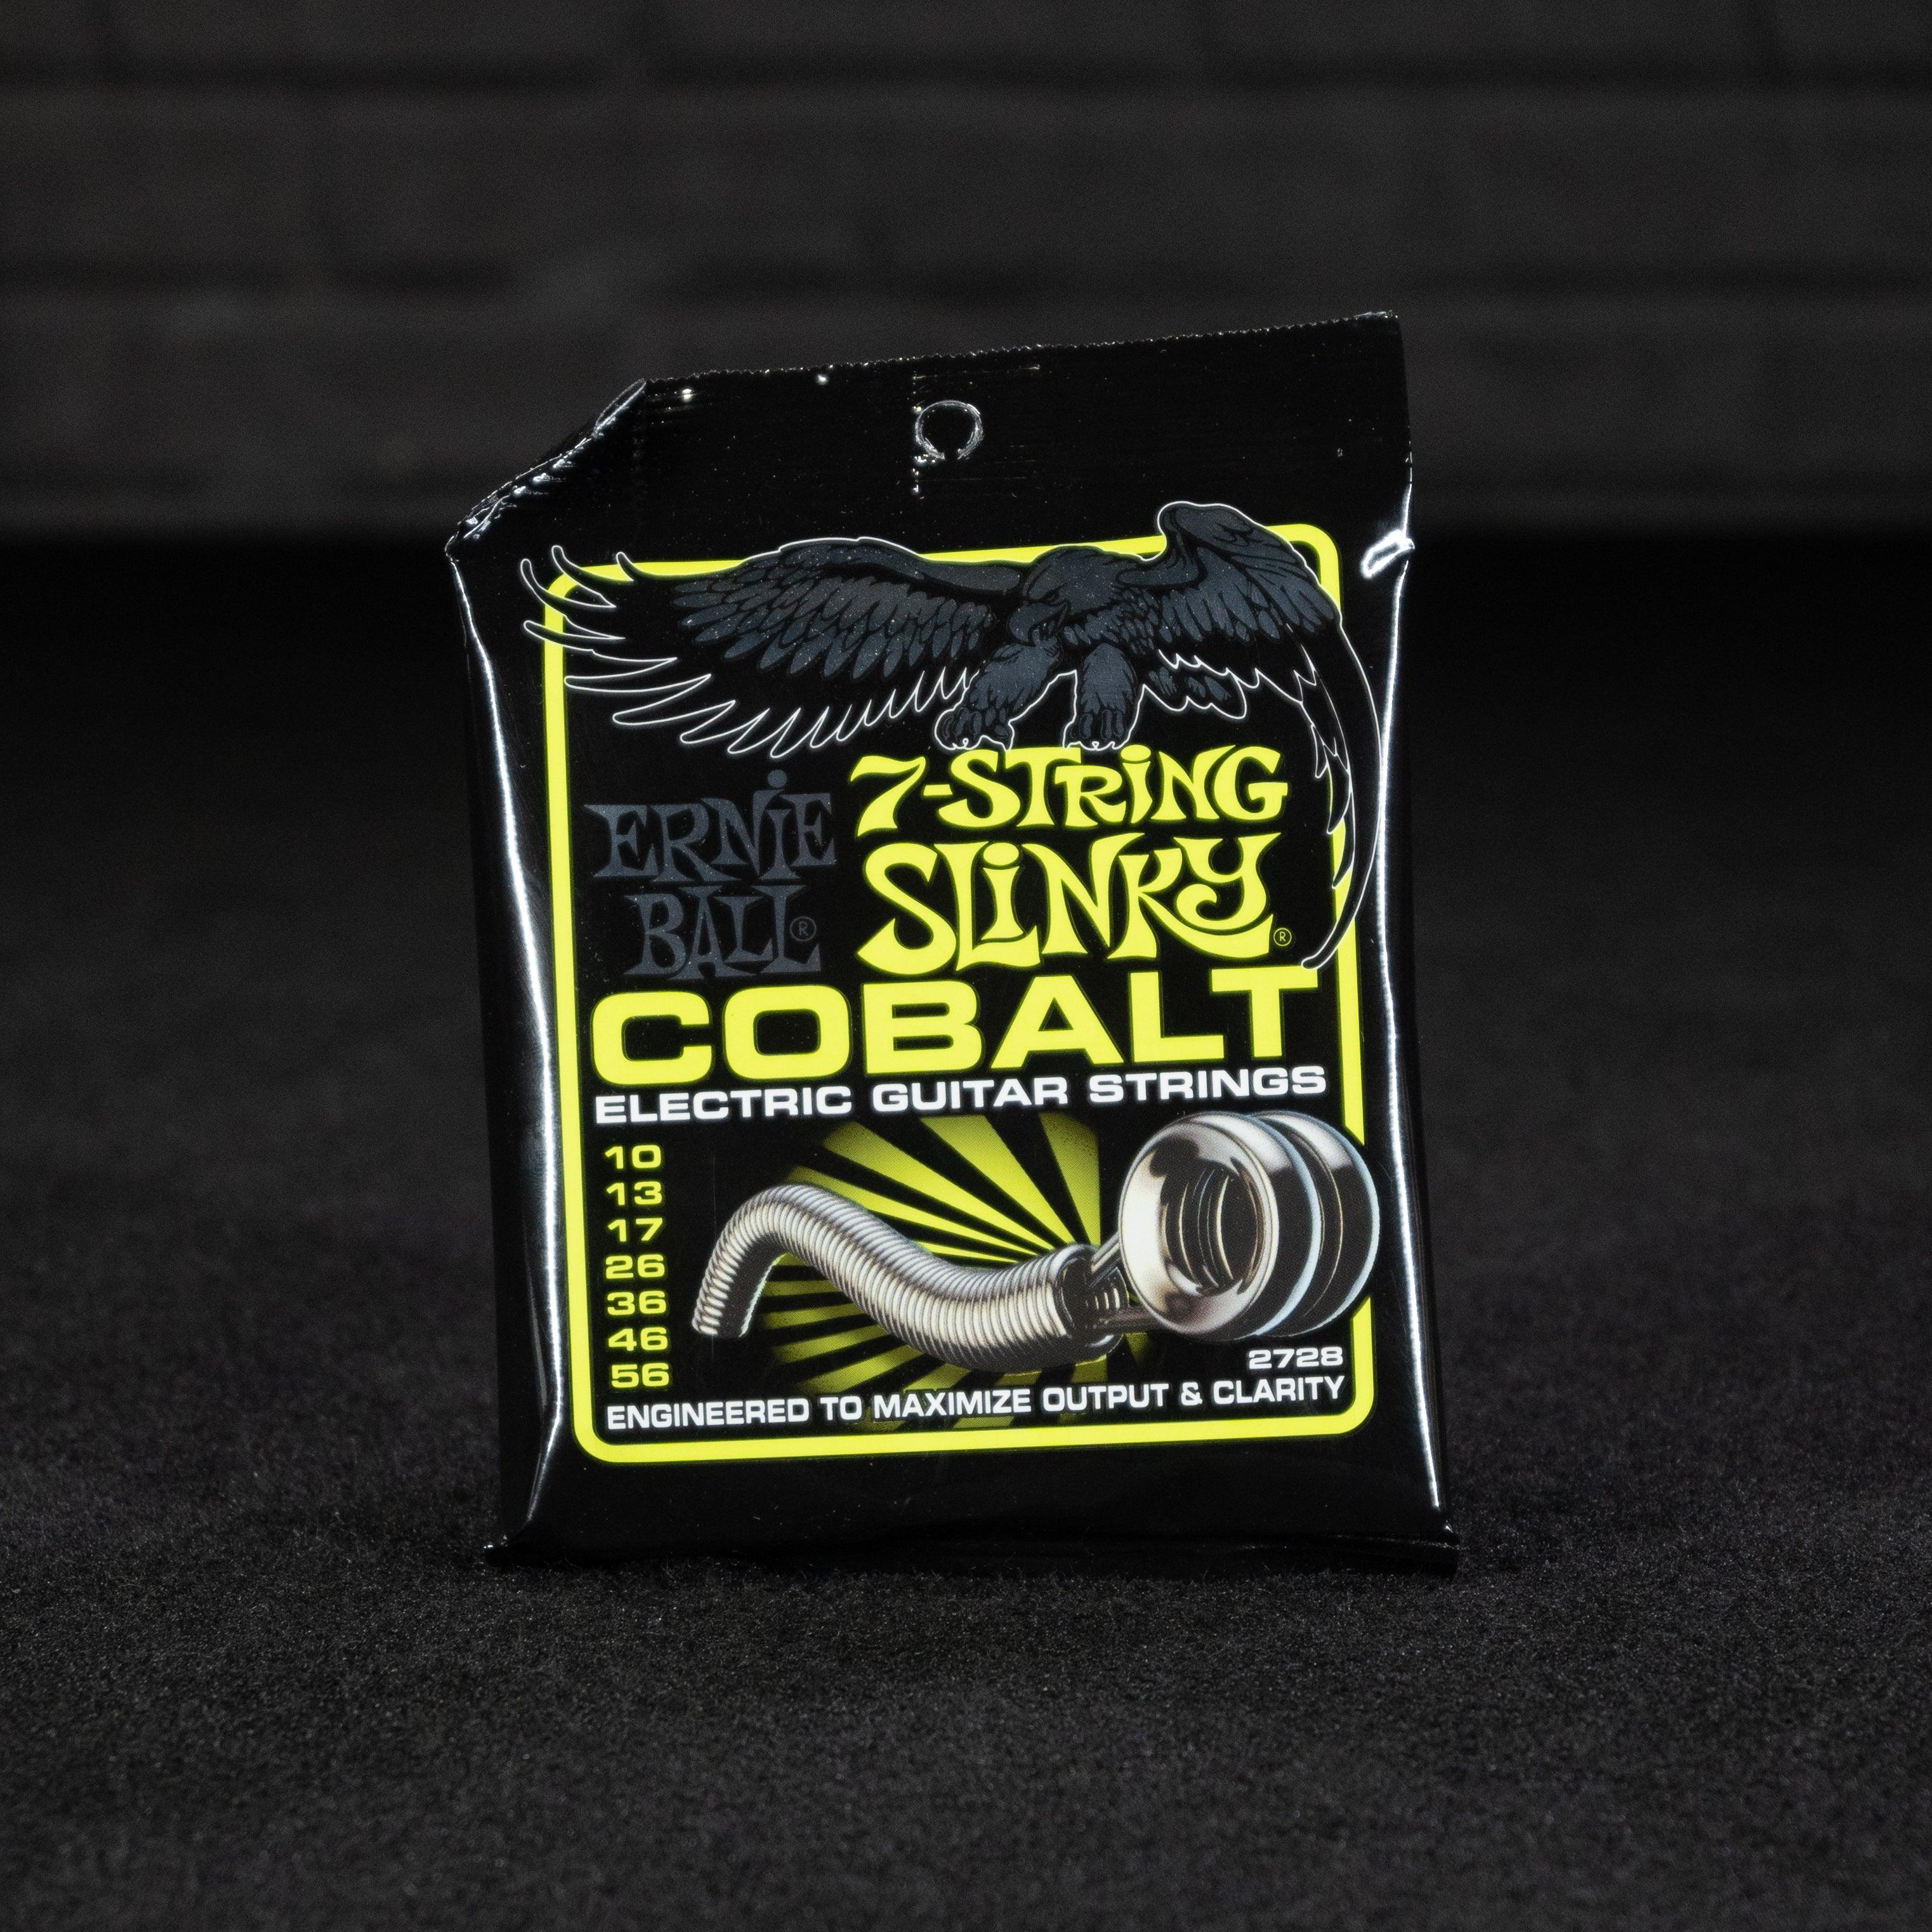 Ernie Ball Regular Slinky 3pack freeshipping - Impulse Music Co.